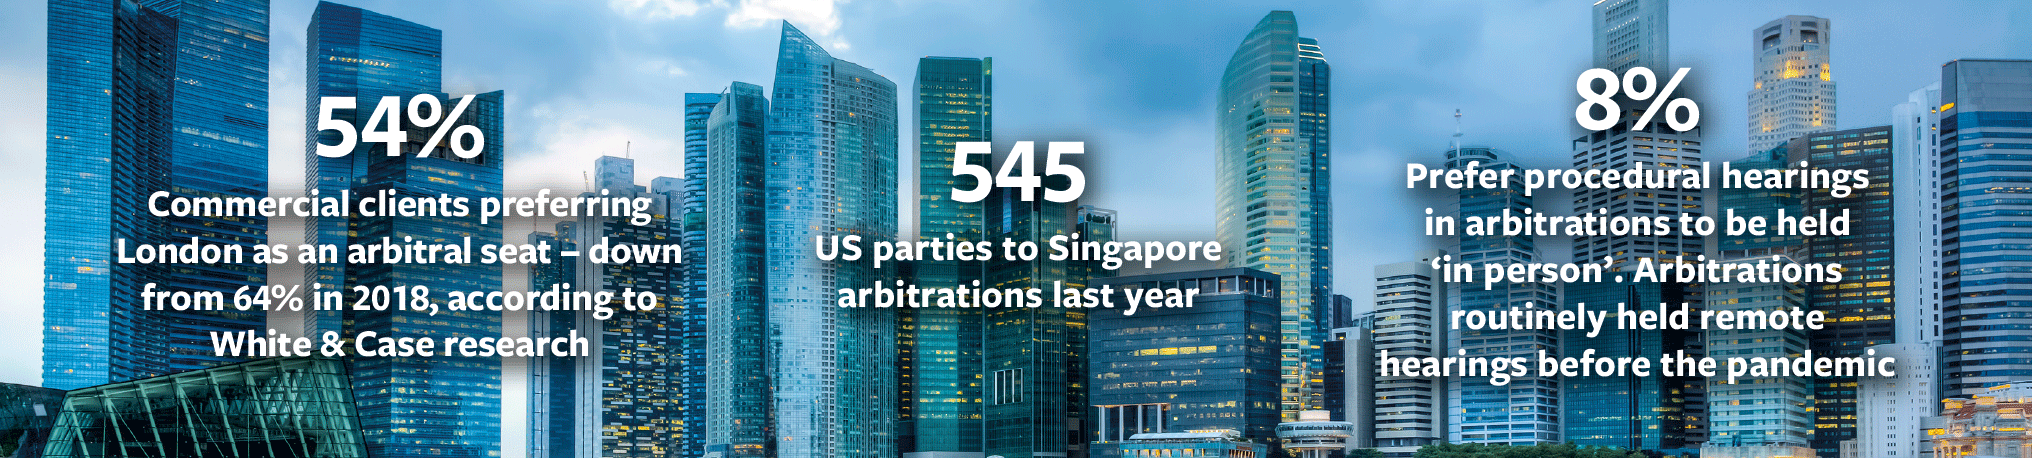 arbitration_infographic